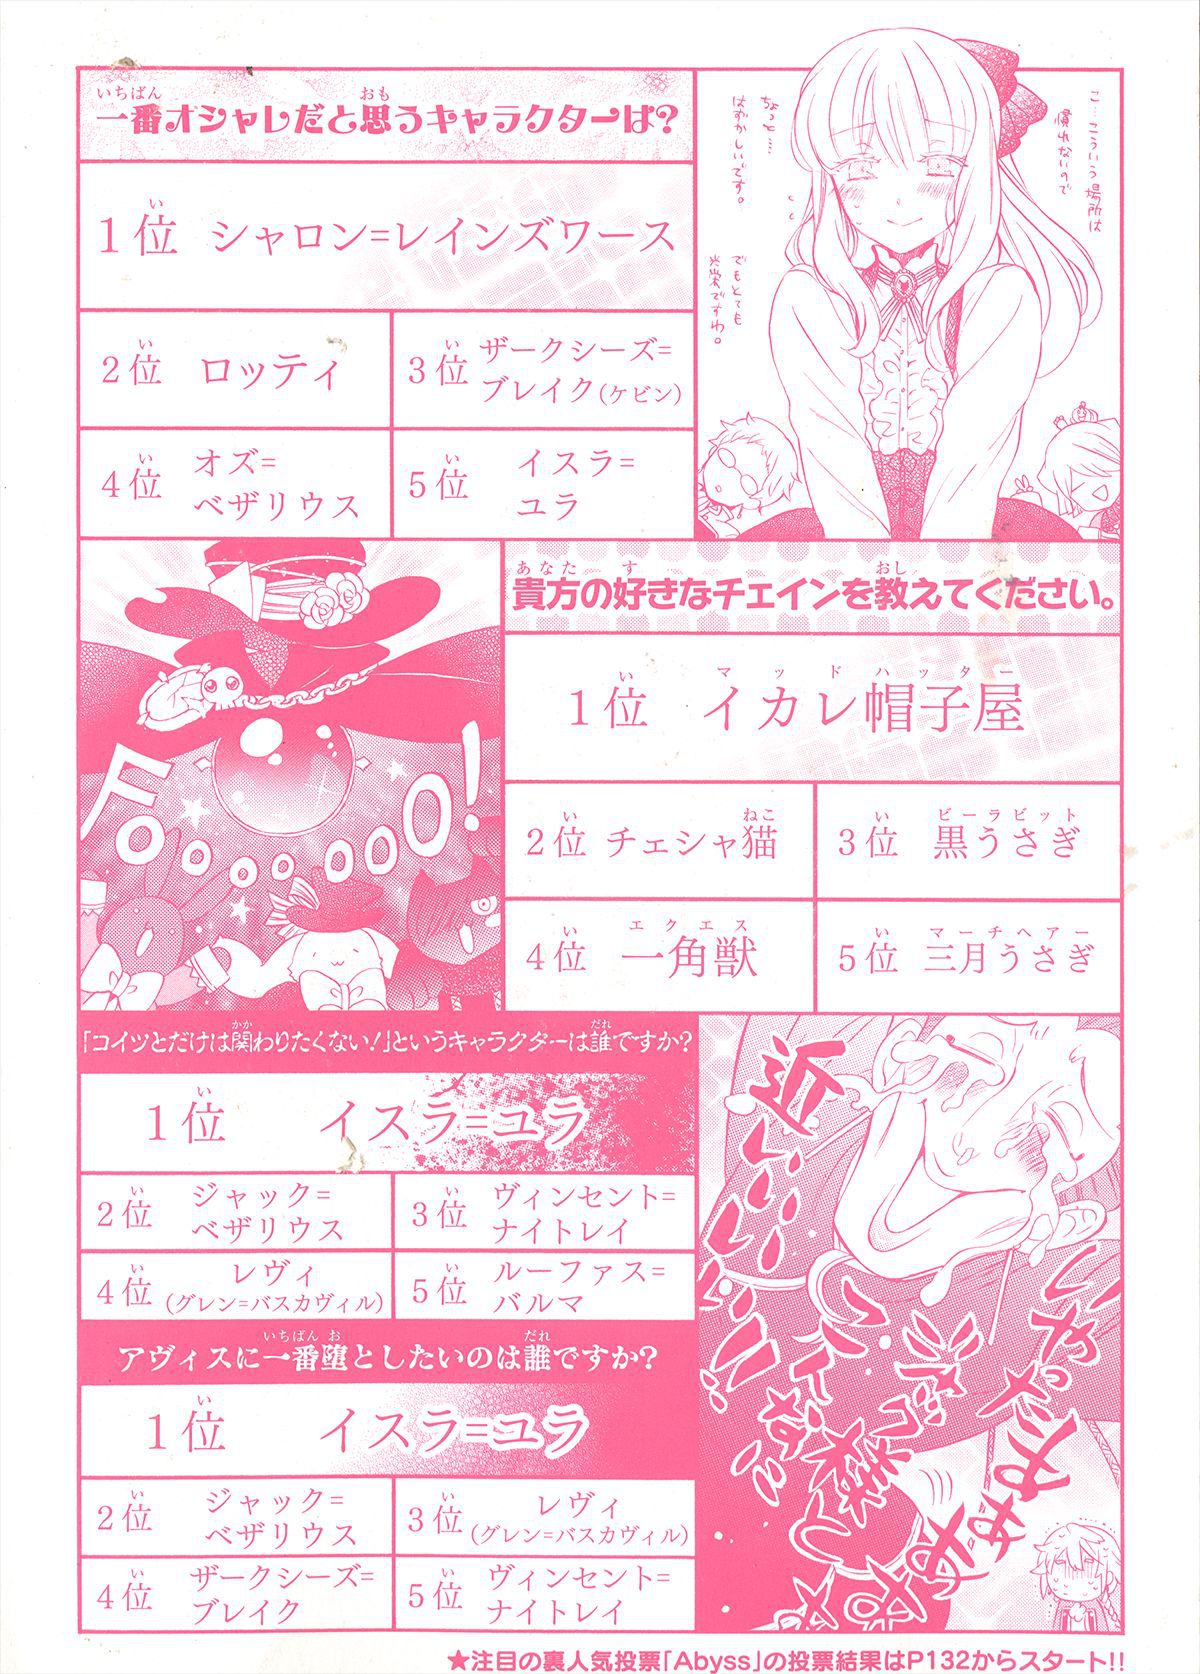 Pandora Hearts Guidebook 24+1: Last Dance パンドラハーツ オフィシャルガイド 24 + 1 ~Last Dance! 255